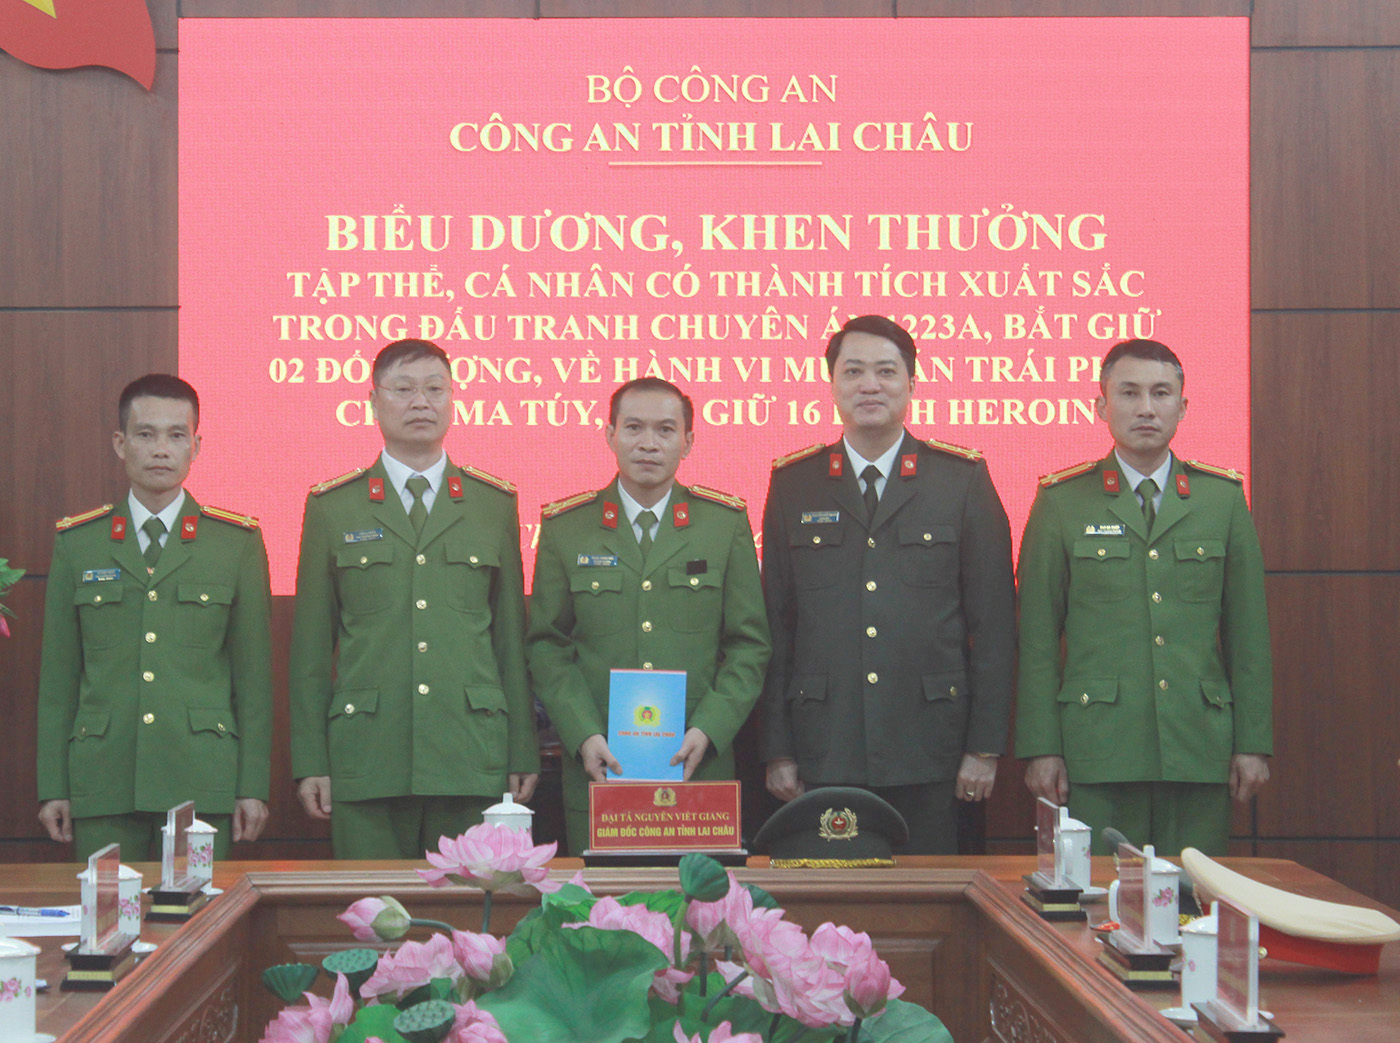 Đại tá Nguyễn Viết Giang - Ủy viên Ban Thường vụ Tỉnh ủy, Giám đốc Công an tỉnh khen thưởng cho tập thể, cá nhân có thành tích xuất sắc trong đấu tranh chuyên án 1223A.